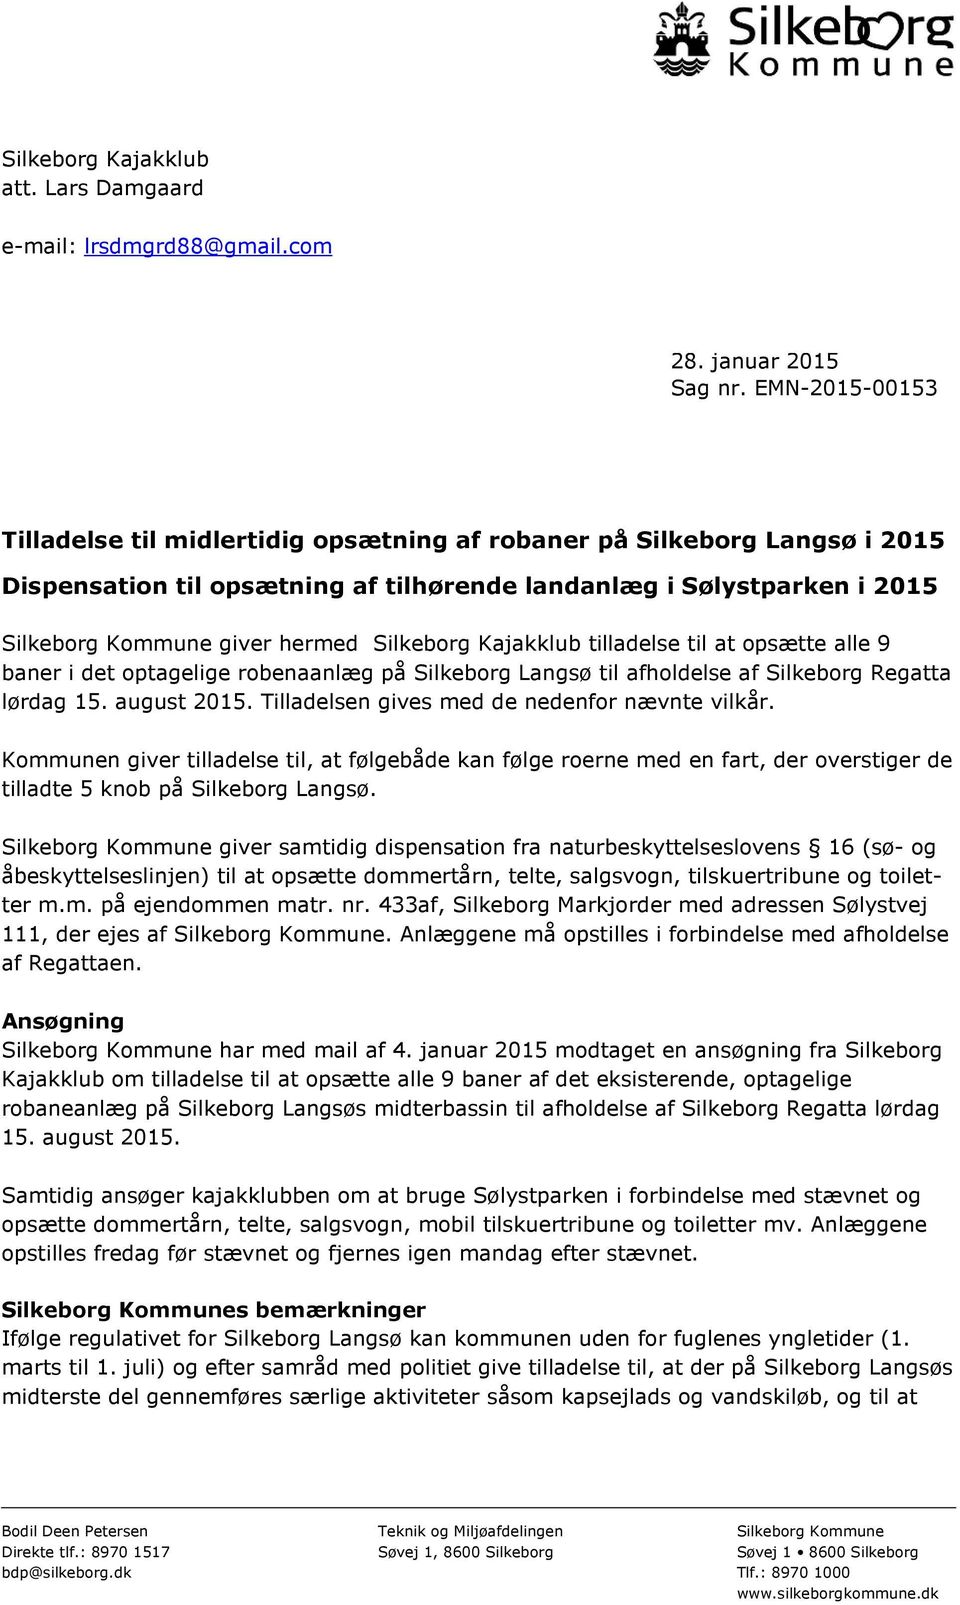 Silkeborg Kajakklub tilladelse til at opsætte alle 9 baner i det optagelige robenaanlæg på Silkeborg Langsø til afholdelse af Silkeborg Regatta lørdag 15. august 2015.